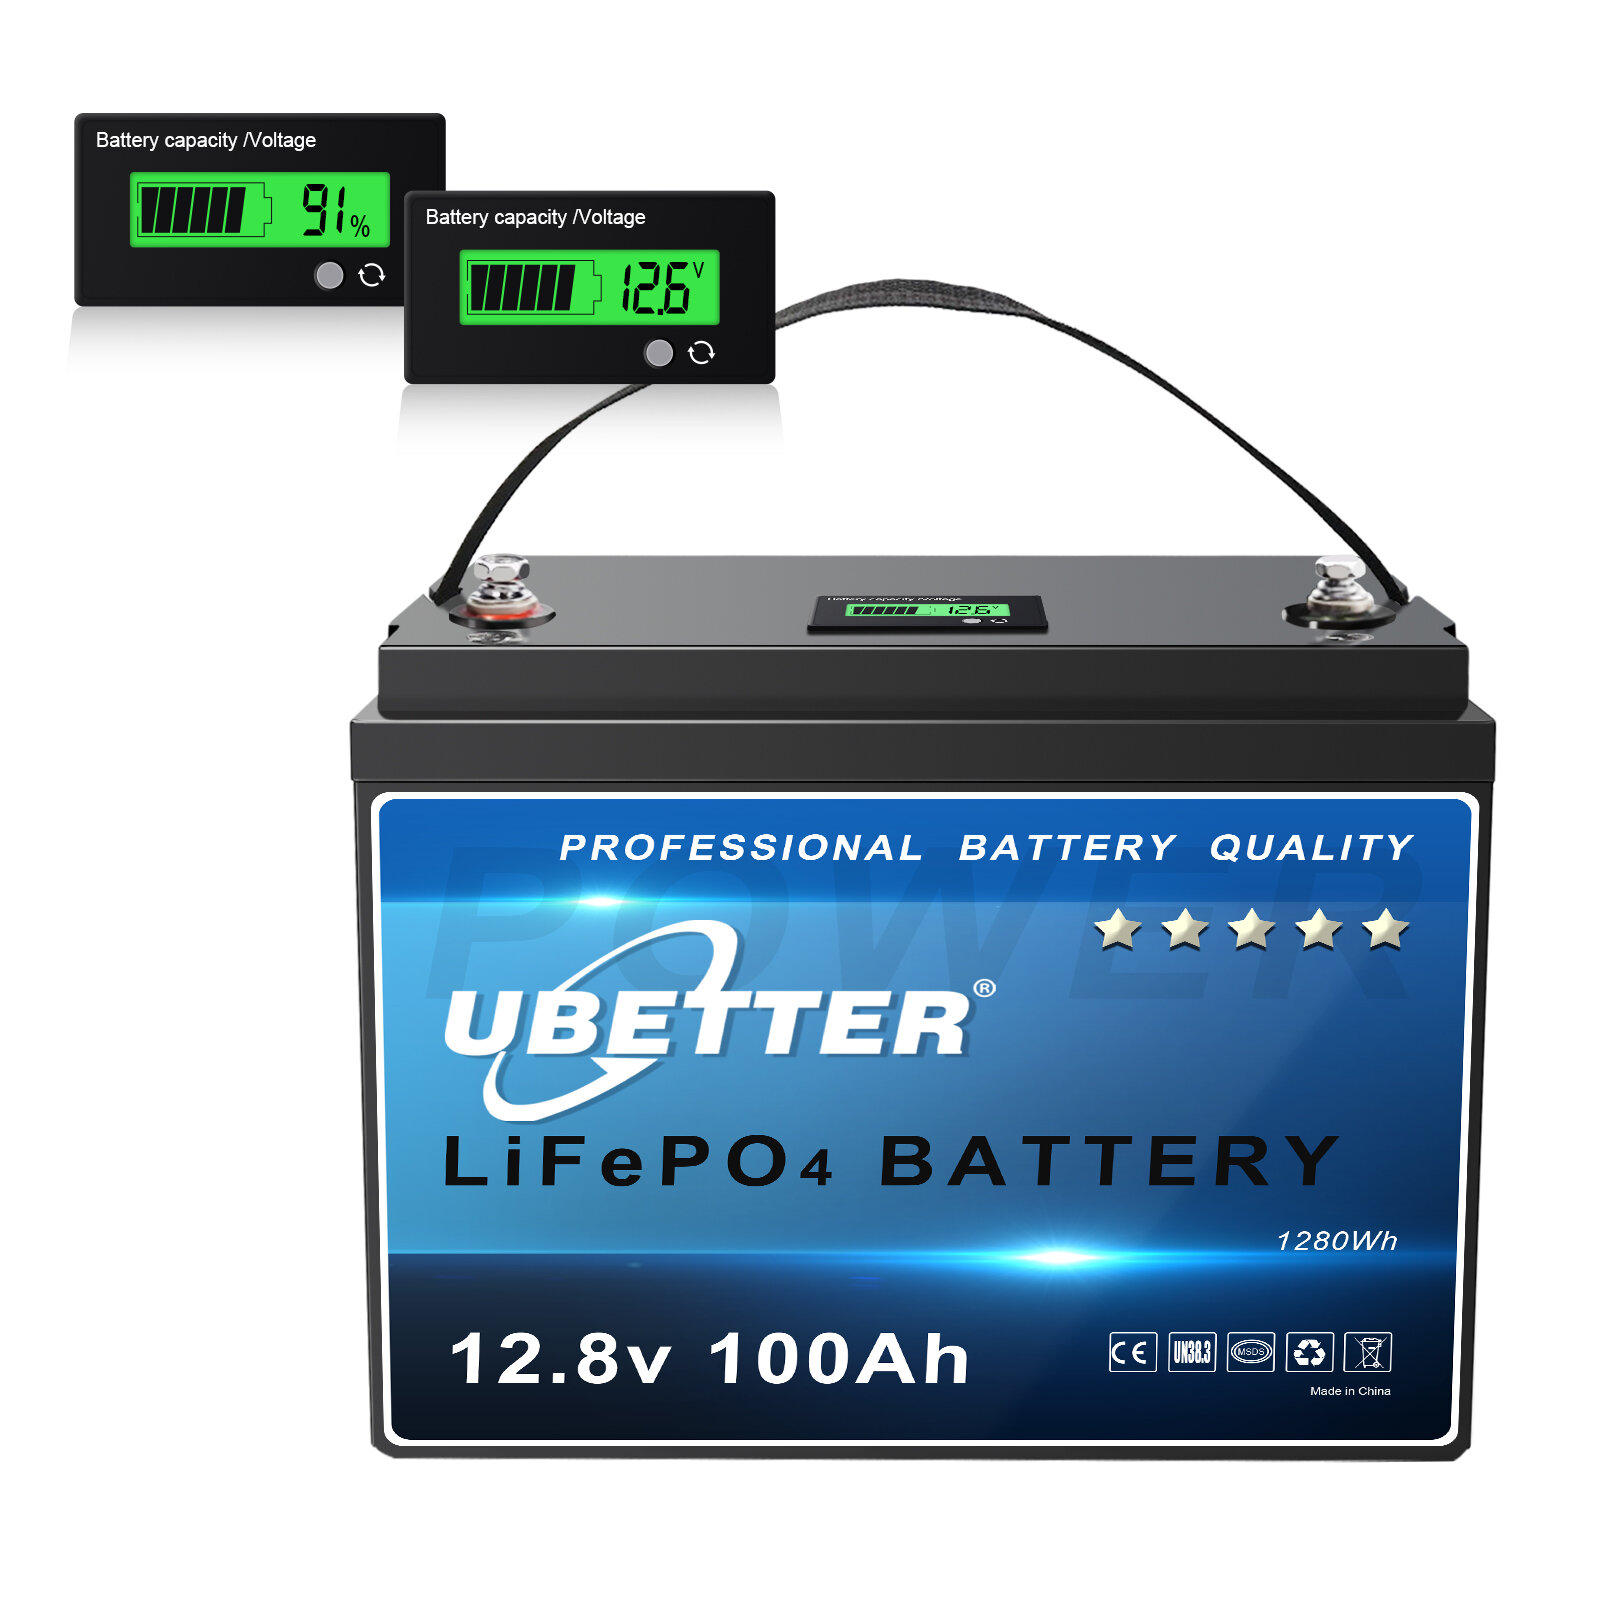 [Directiva de la UE] Batería de litio LiFePO4 UBETTER Mini de 100 Ah y 12 V con BMS de 100A, con más de 4000 ciclos y 10 años de duración, batería de litio máxima de 1280 Wh, tamaño mini para autocaravana, RV, sistema off-grid.